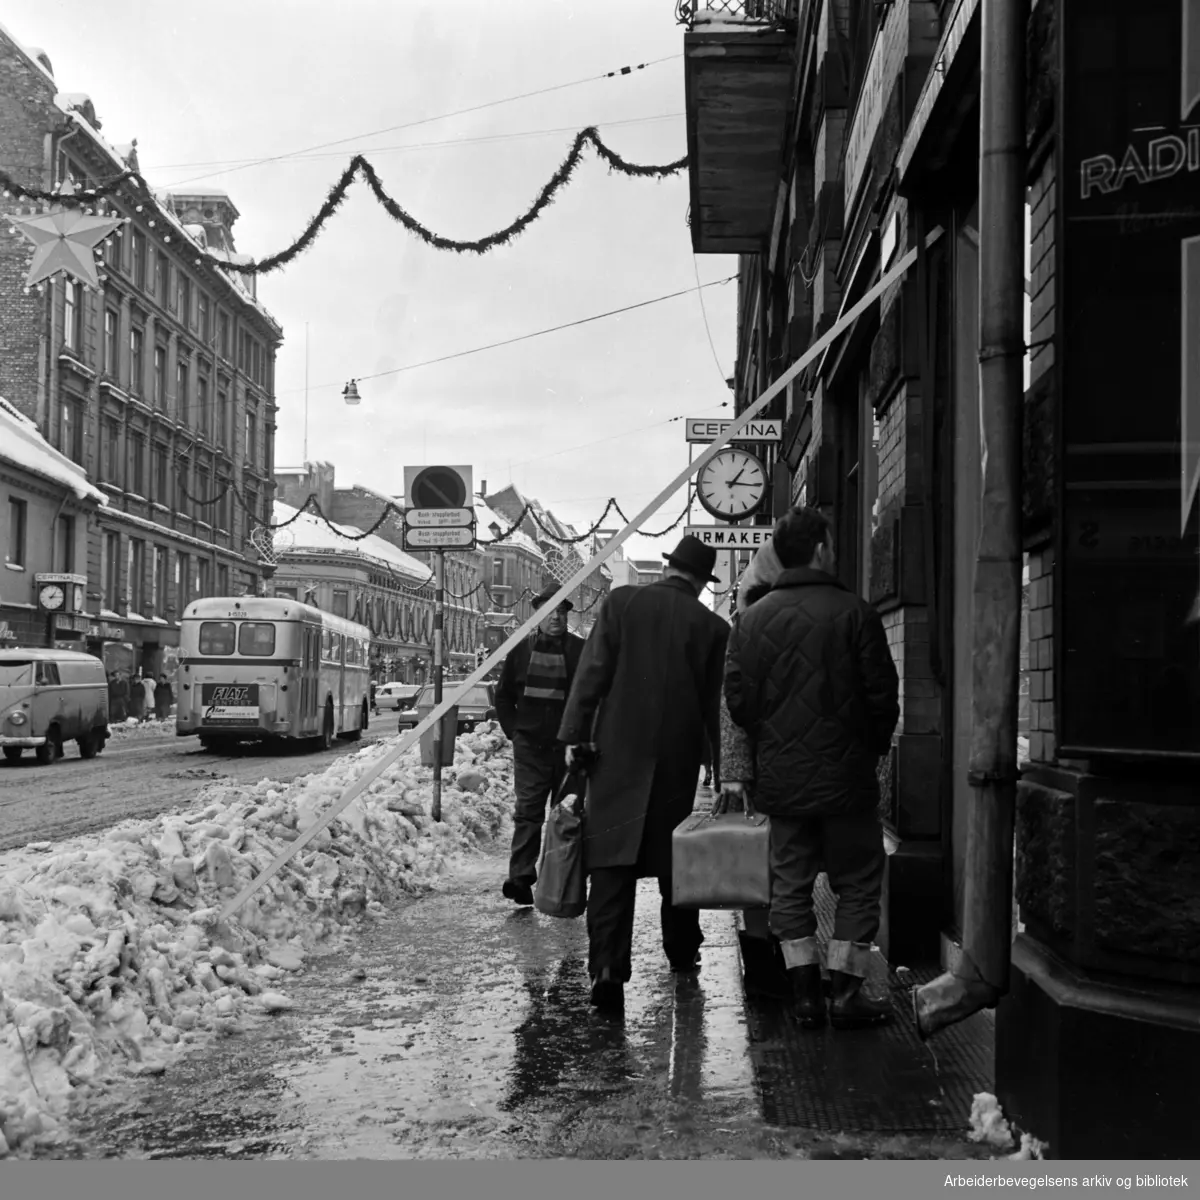 "I sentrum hadde mange gårdeiere selv sørget for å rydde fortauene. Men faren truet ovenfra. Flere gående ungikk med snau klaring snørasene, mens andre ble truffet". Storgata. Desember 1967.